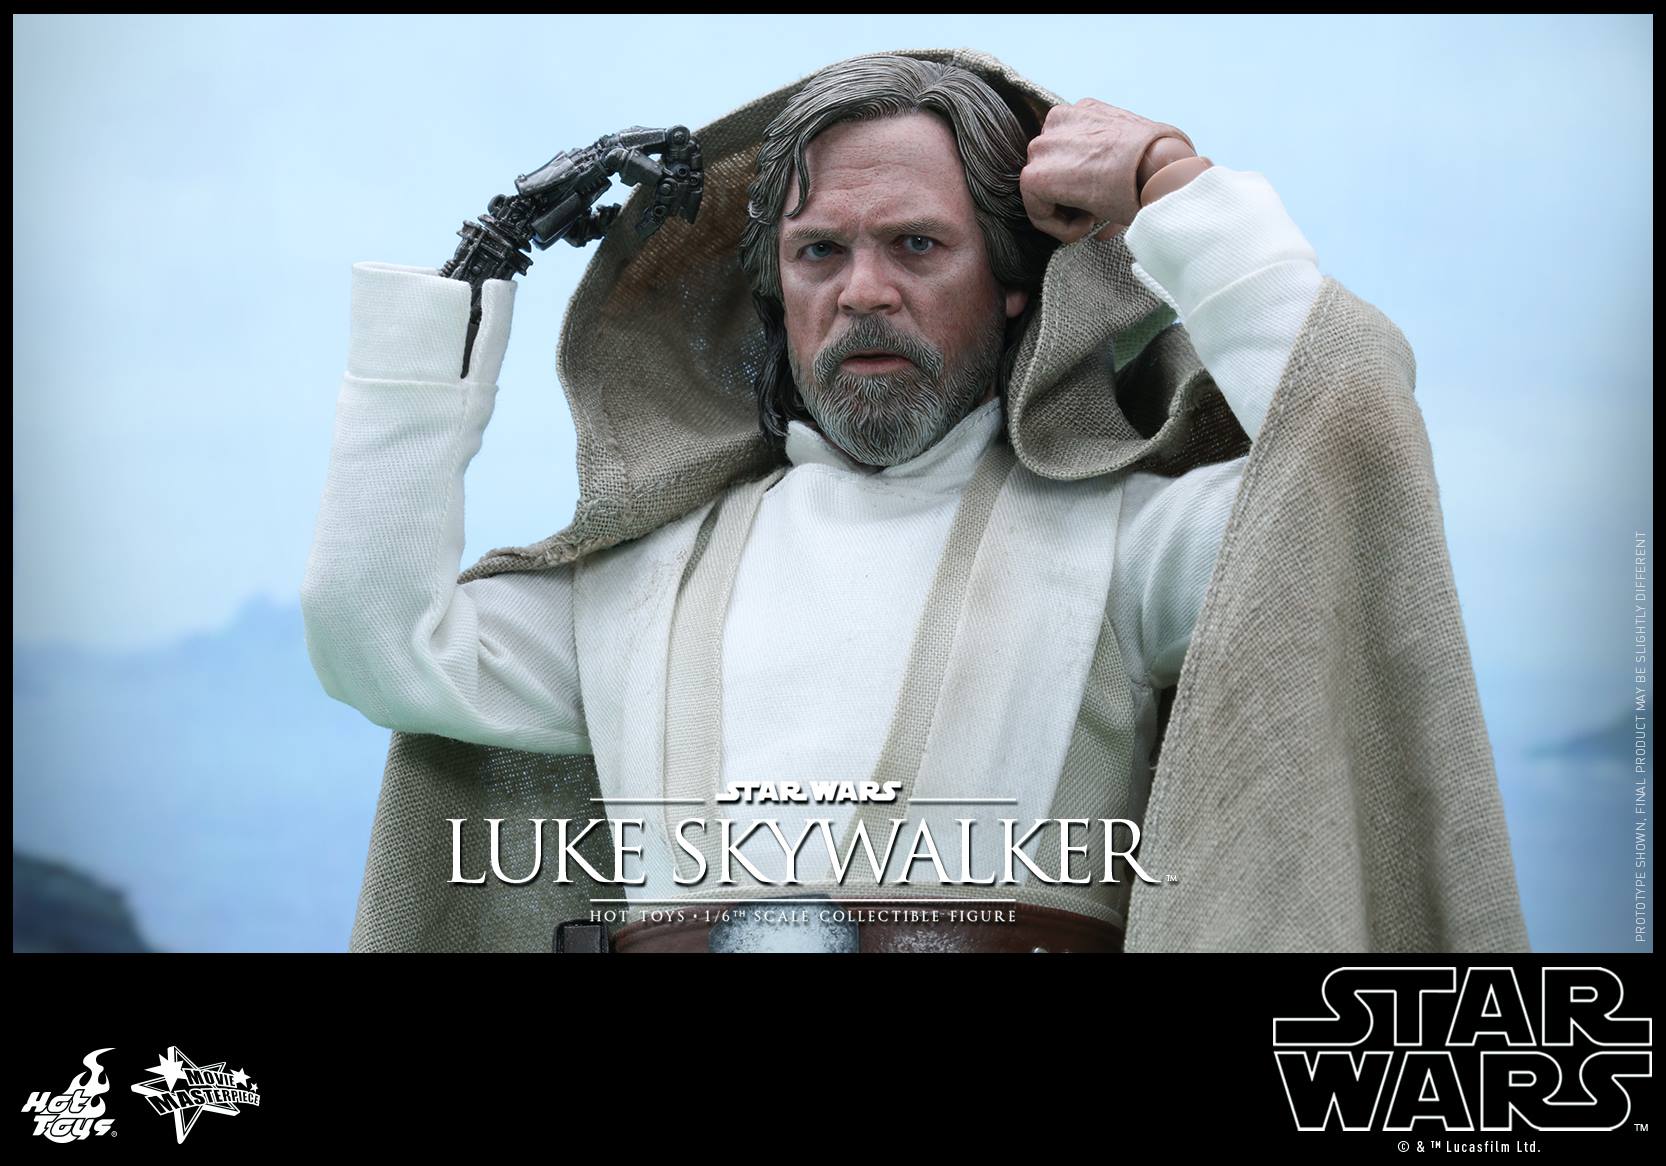 swfahtluke11 Luke Skywalker Star Wars: The Force Awakens Hot Toys Action Figure Revealed